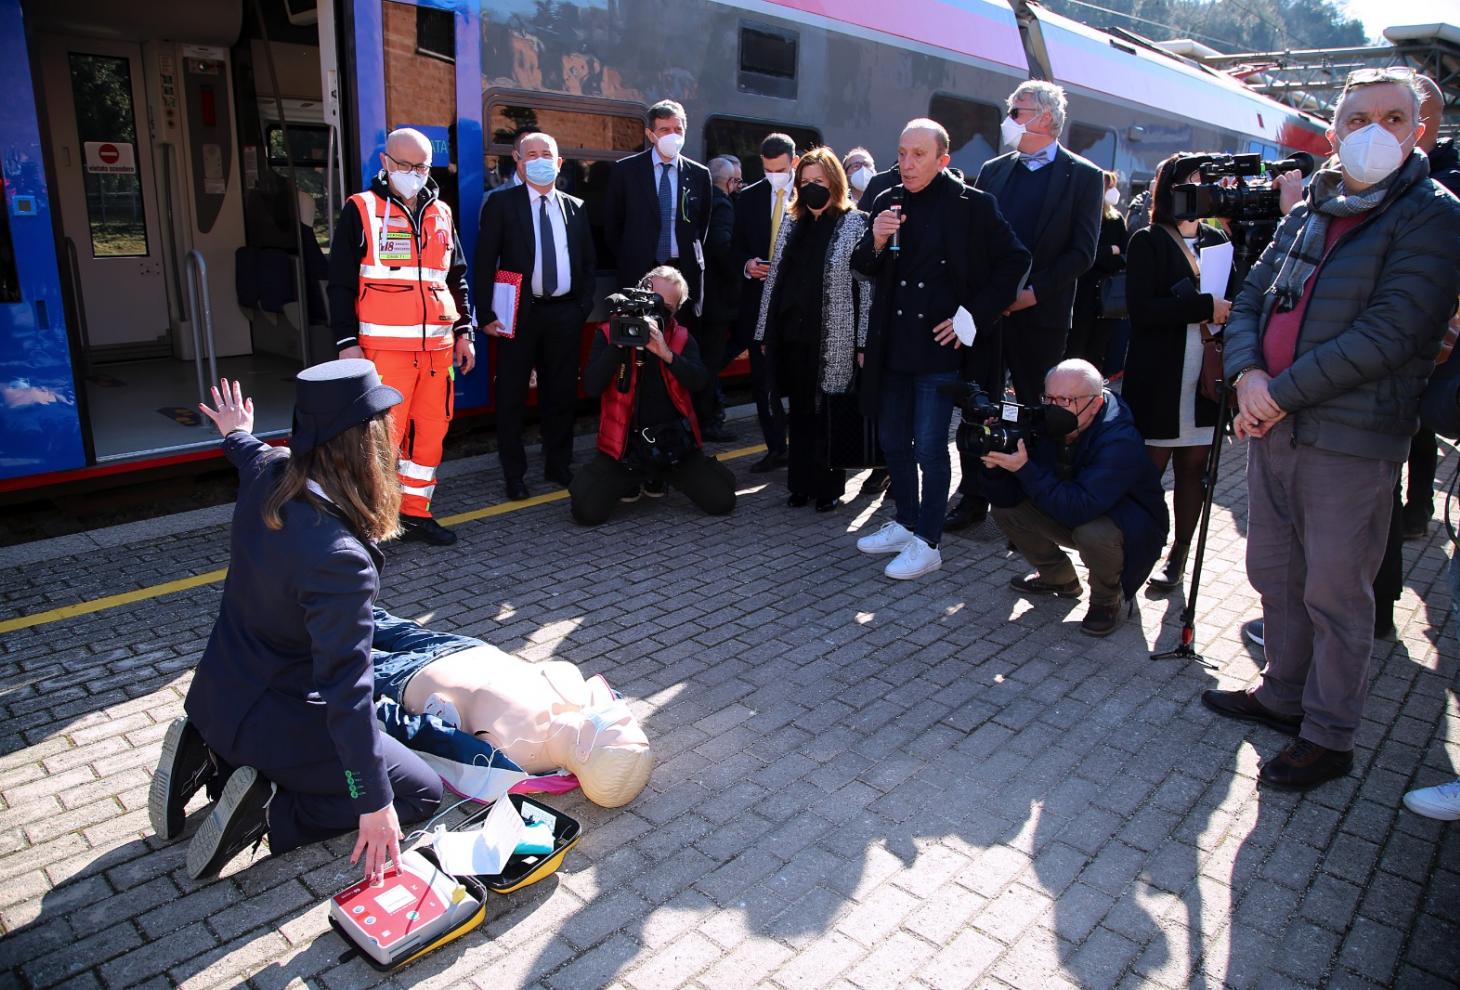 La dimostrazione dei defibrillatori effettuata alla stazione di Lanciano 